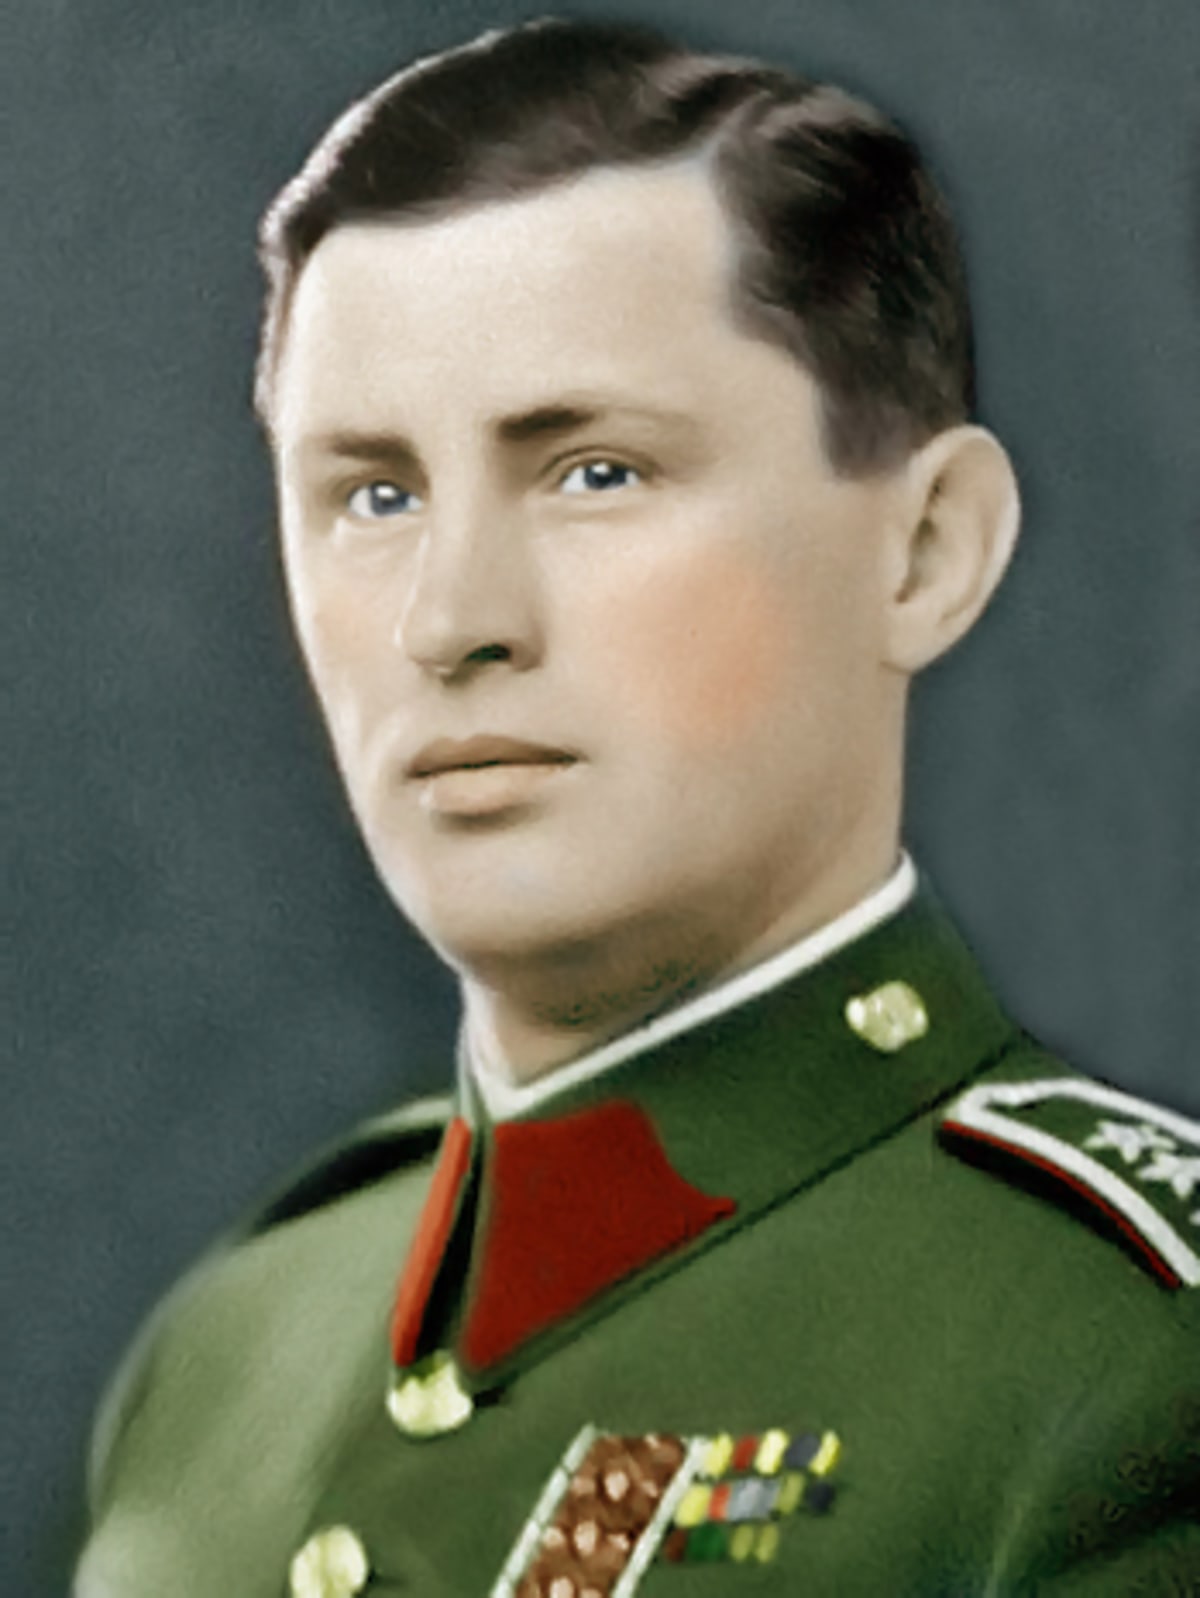 Předválečný portrét pplk. Josefa Mašína v důstojnické uniformě československé armády. (kolorizace)